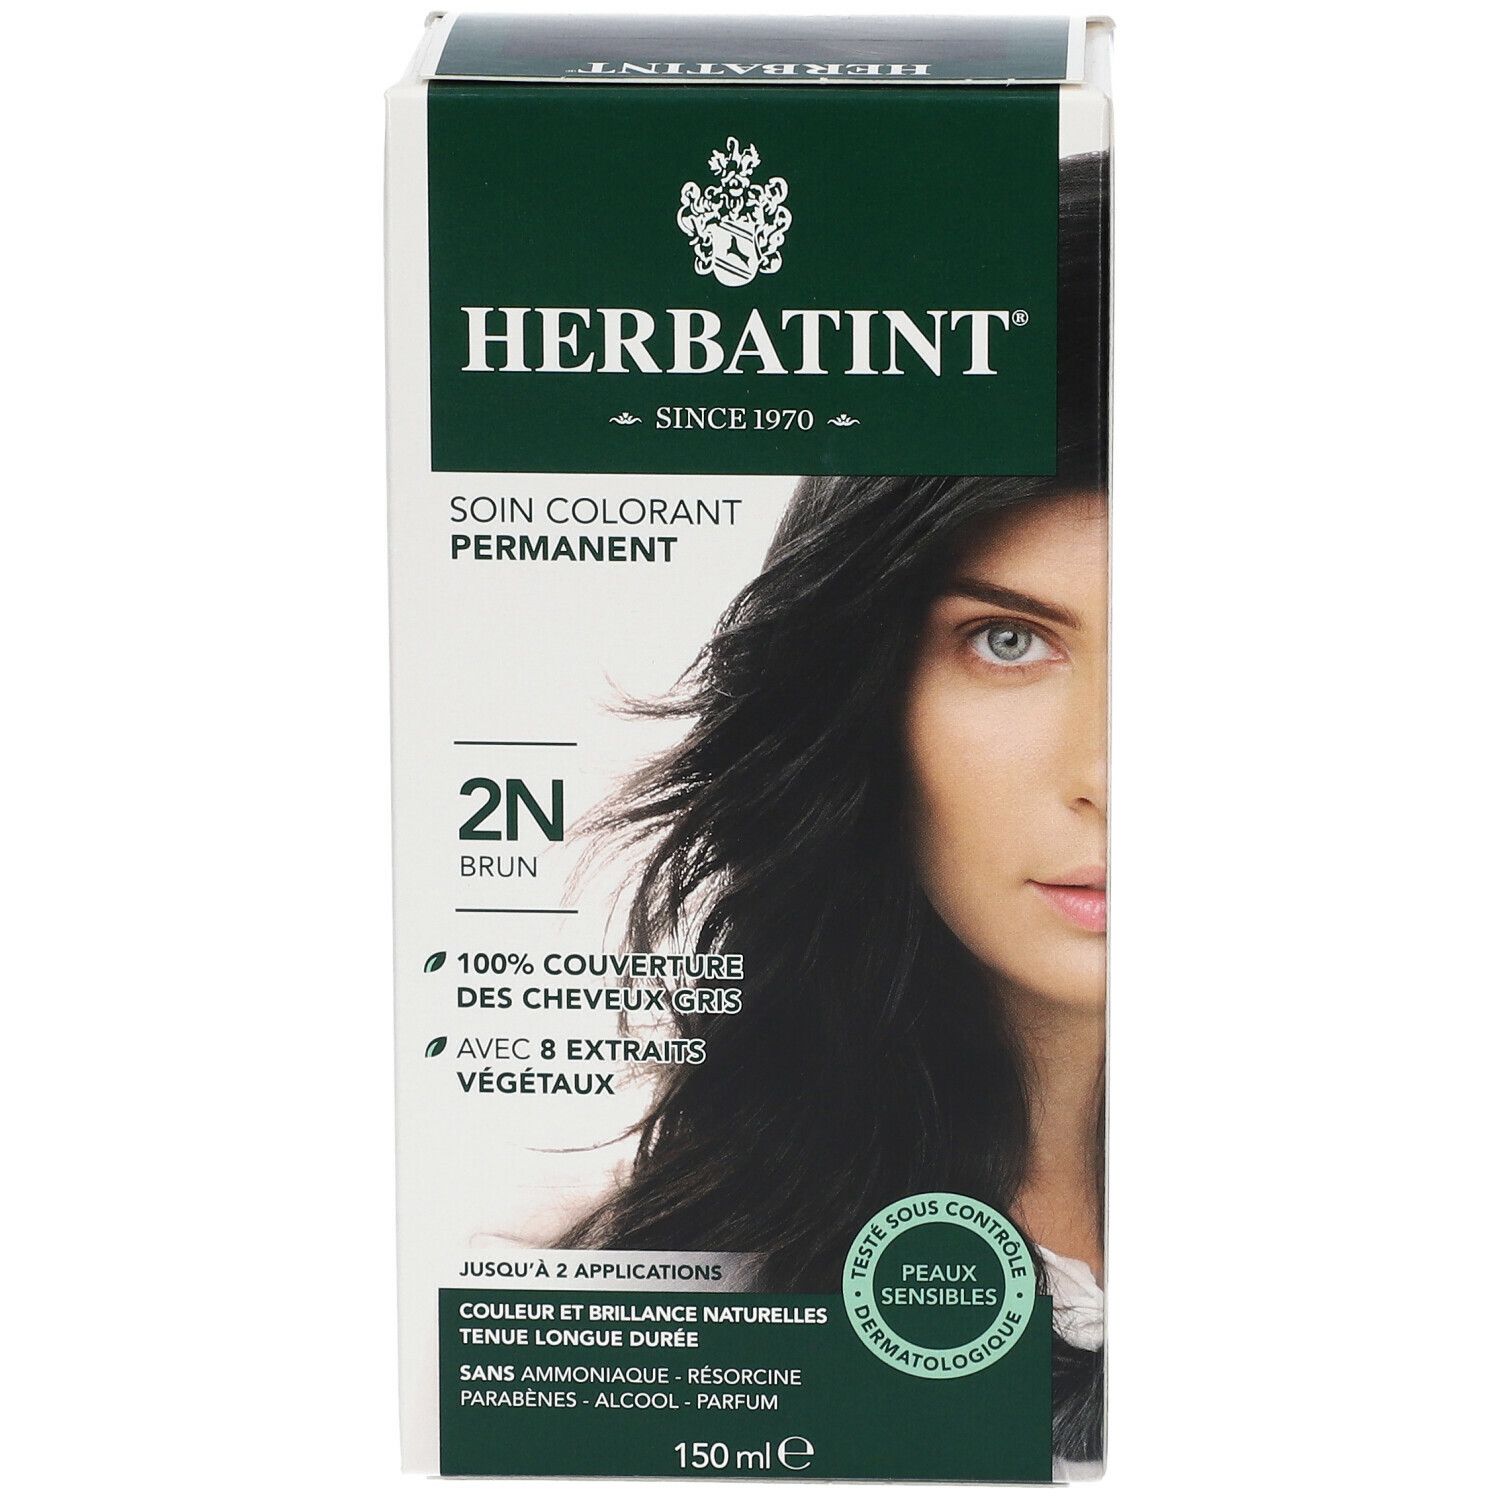 Herbatint Soin colorant permanent Brun 2N